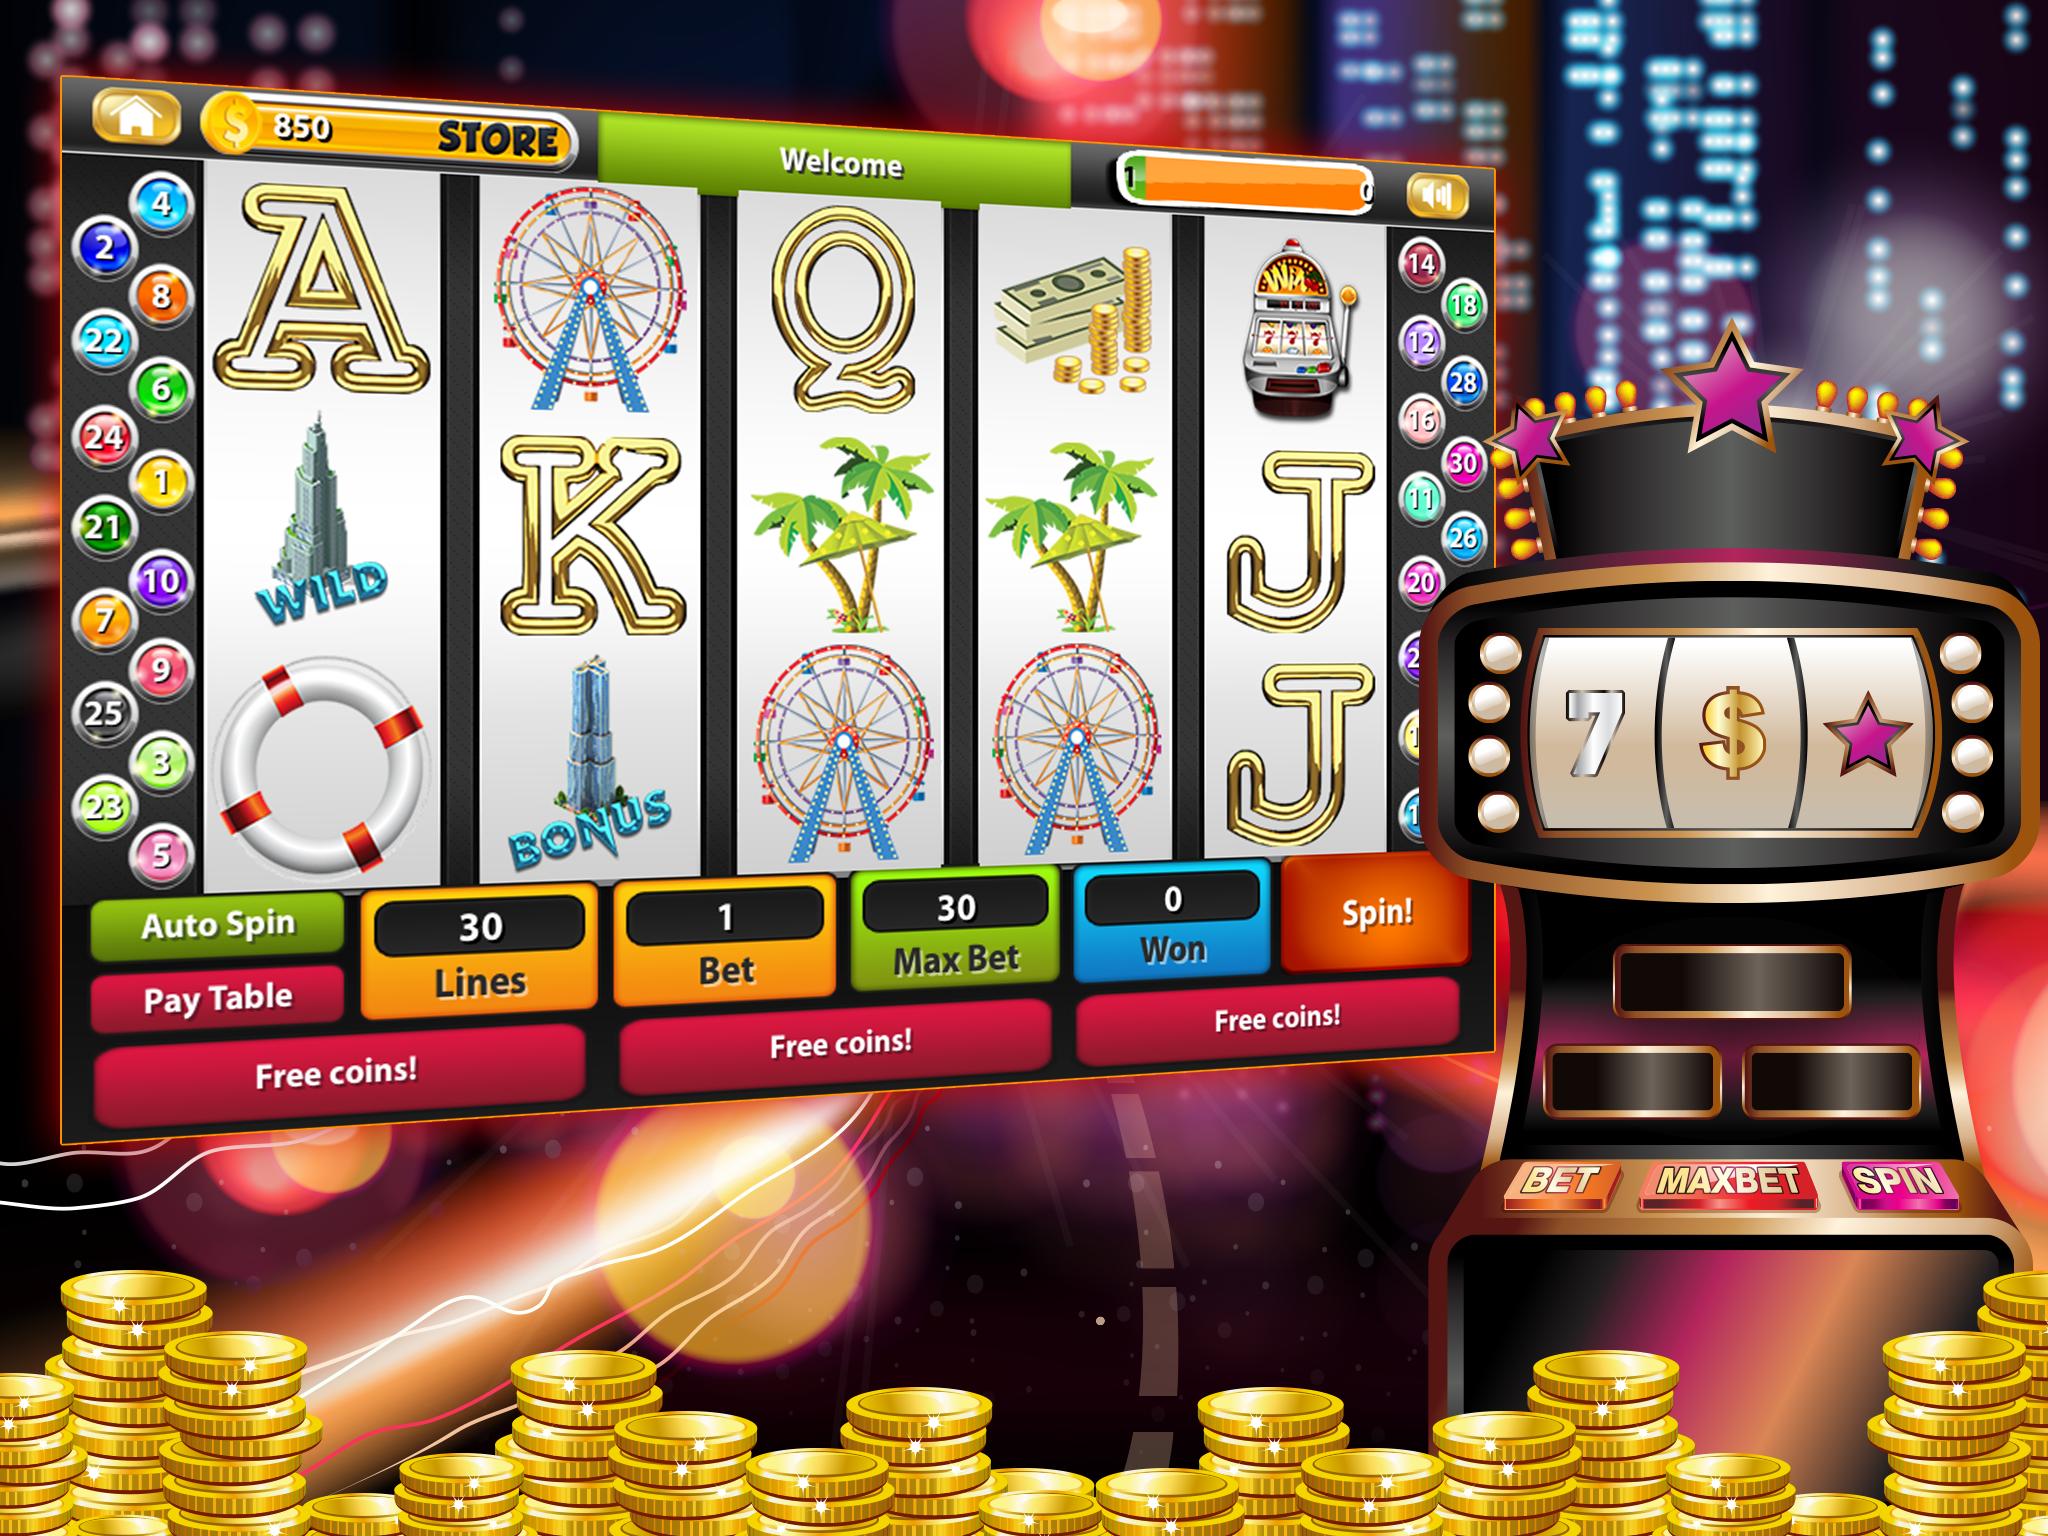 Android 向 け の Retro Slot Machine Casino APK を ダ ウ ン ロ-ド し ま し ょ う